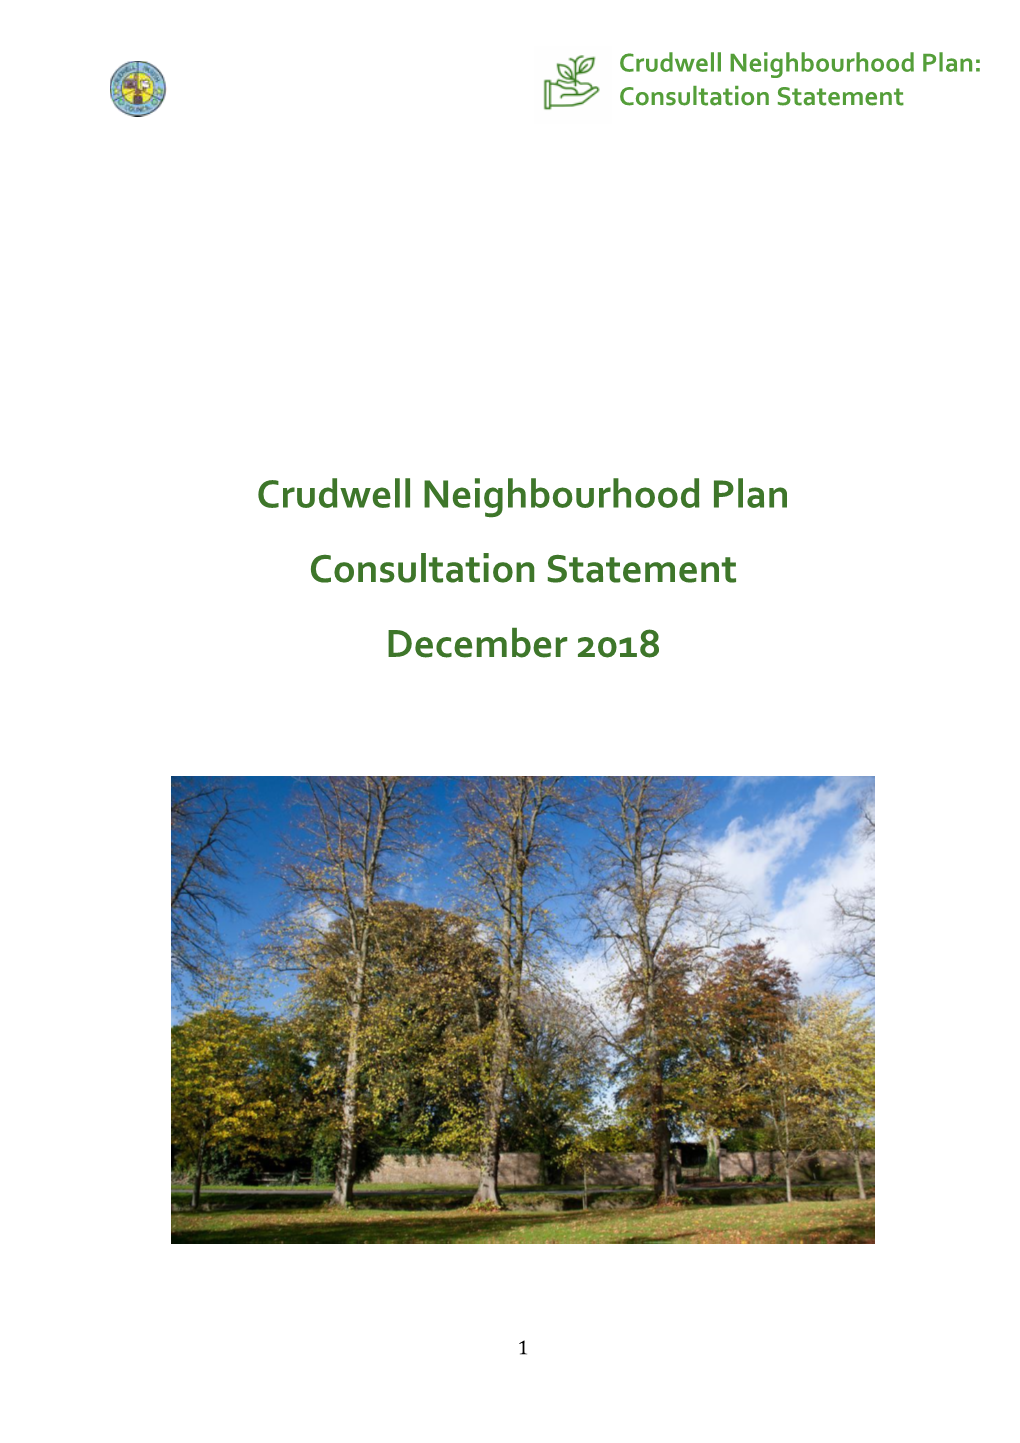 Crudwell Neighbourhood Plan: Consultation Statement